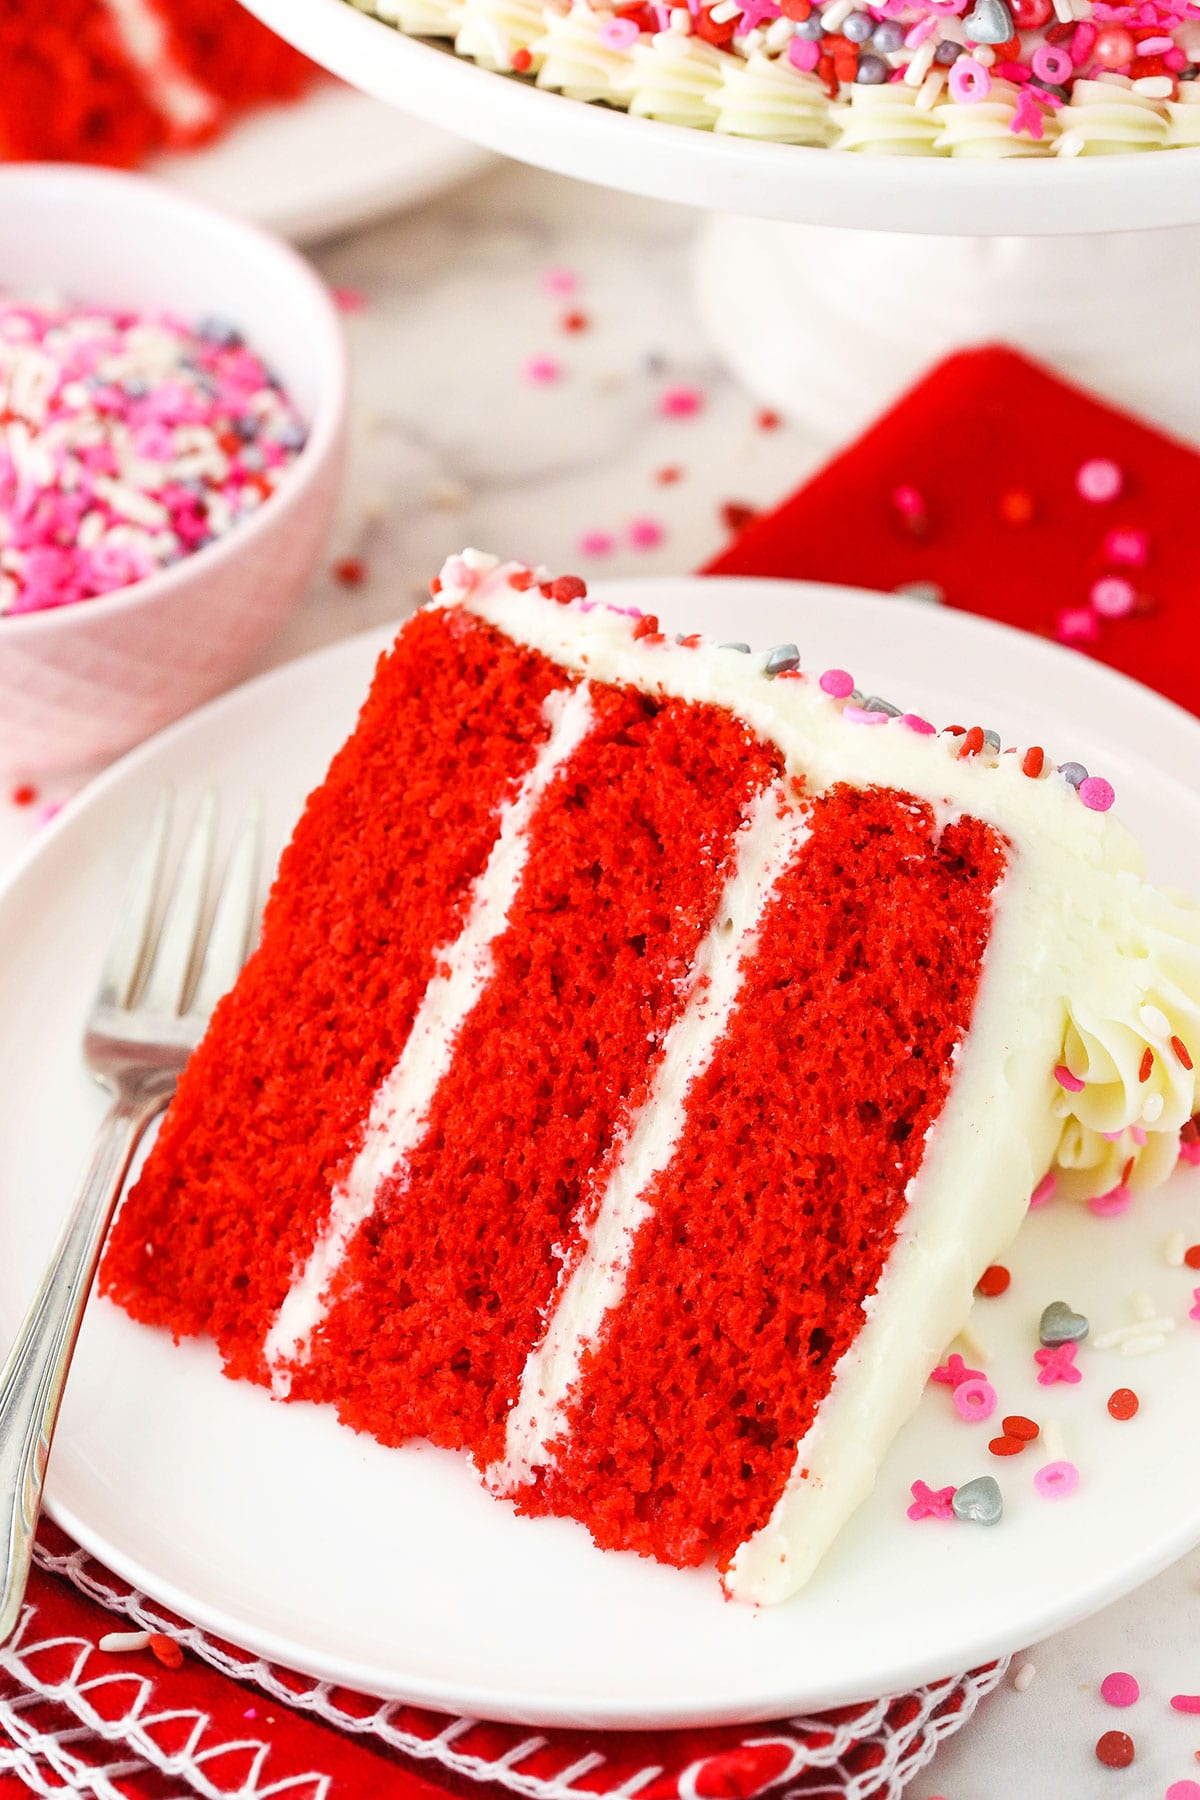 Red Velvet cake - The Family Cake Company